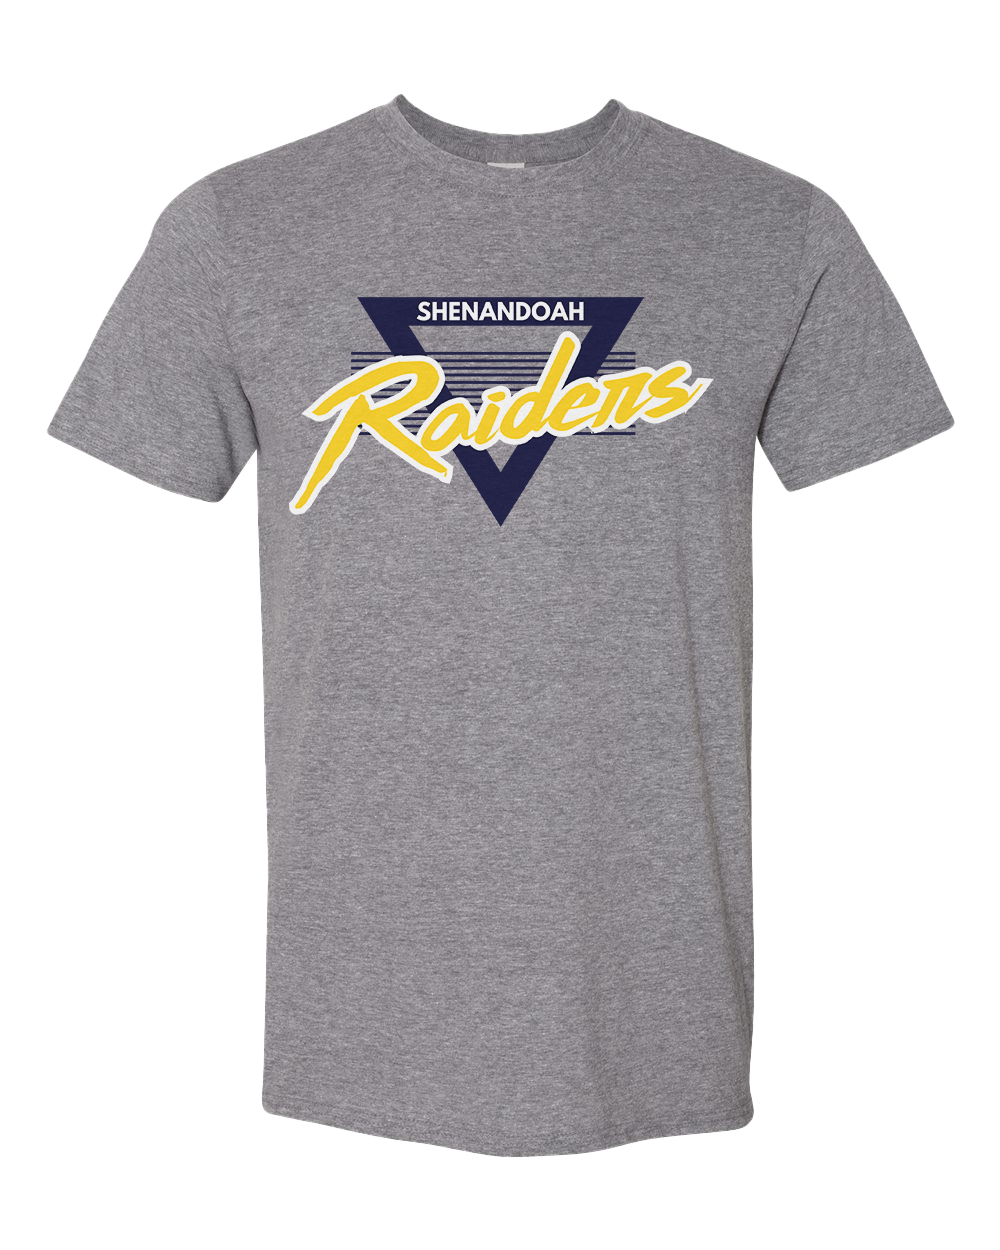 Shenandoah Raiders vintage 90s Tshirt - Graphite Heather